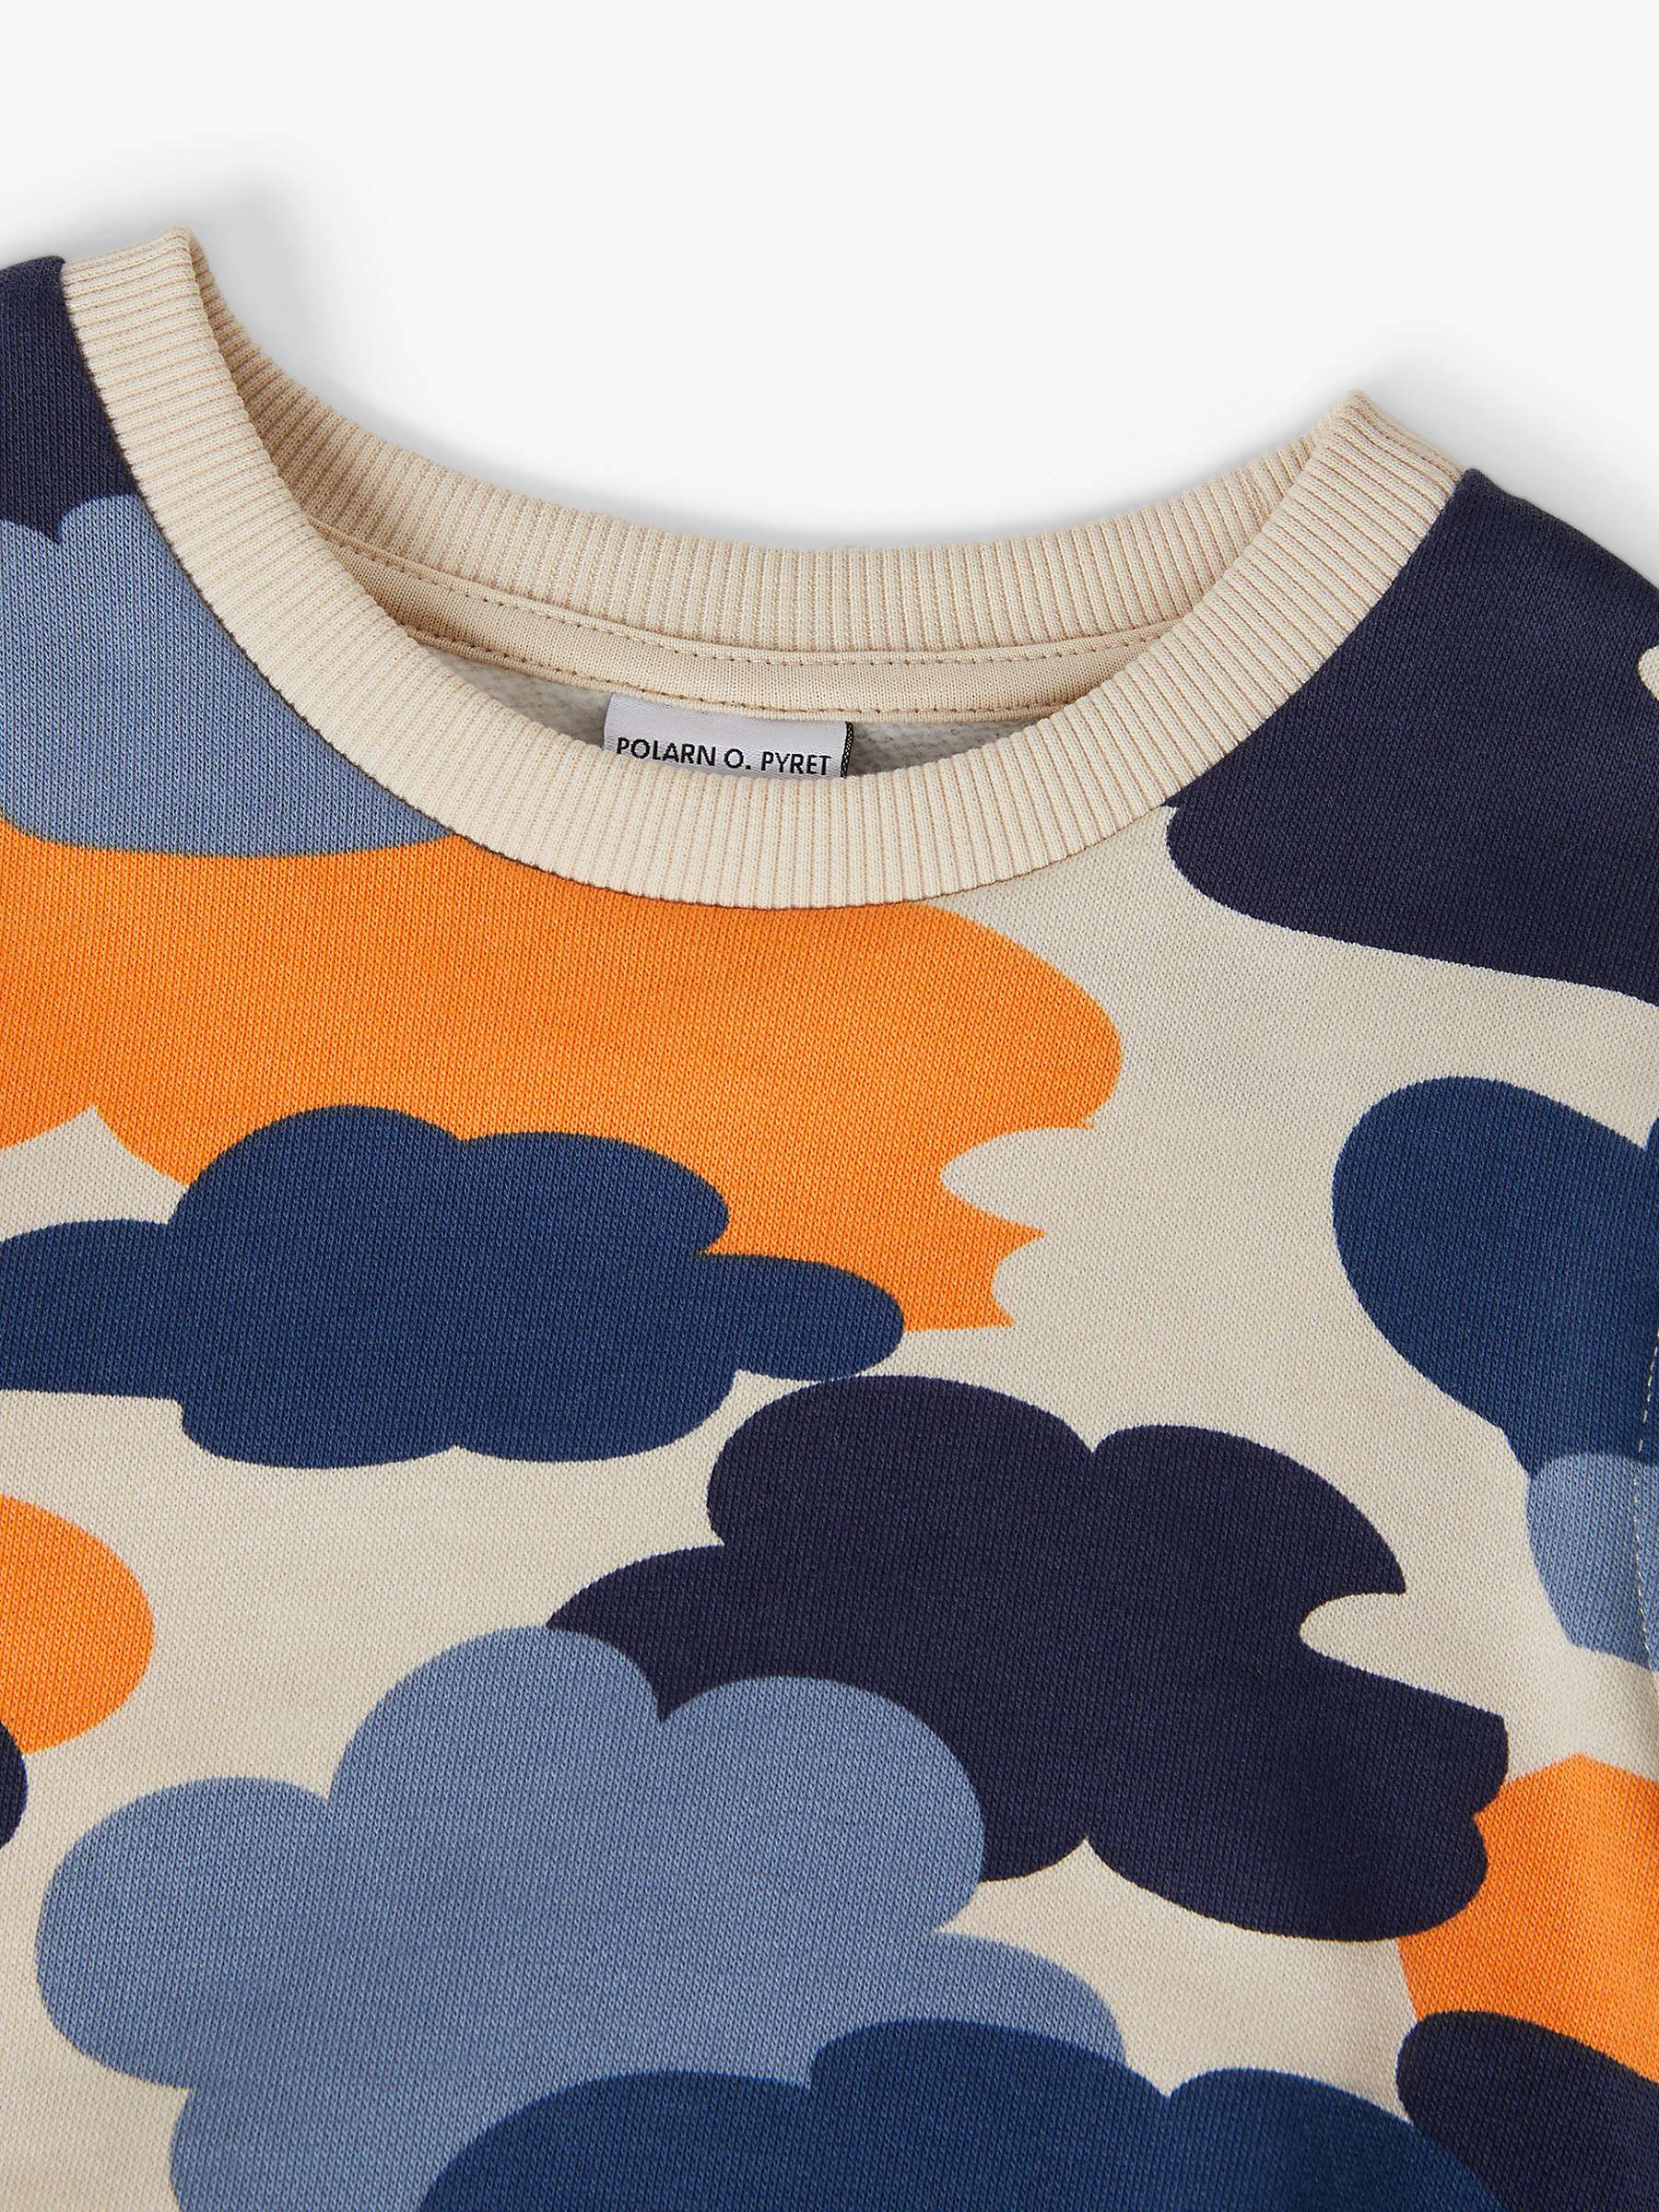 Buy Polarn O. Pyret Kids' Organic Cotton Cloud Print Sweatshirt, Natural/Multi Online at johnlewis.com